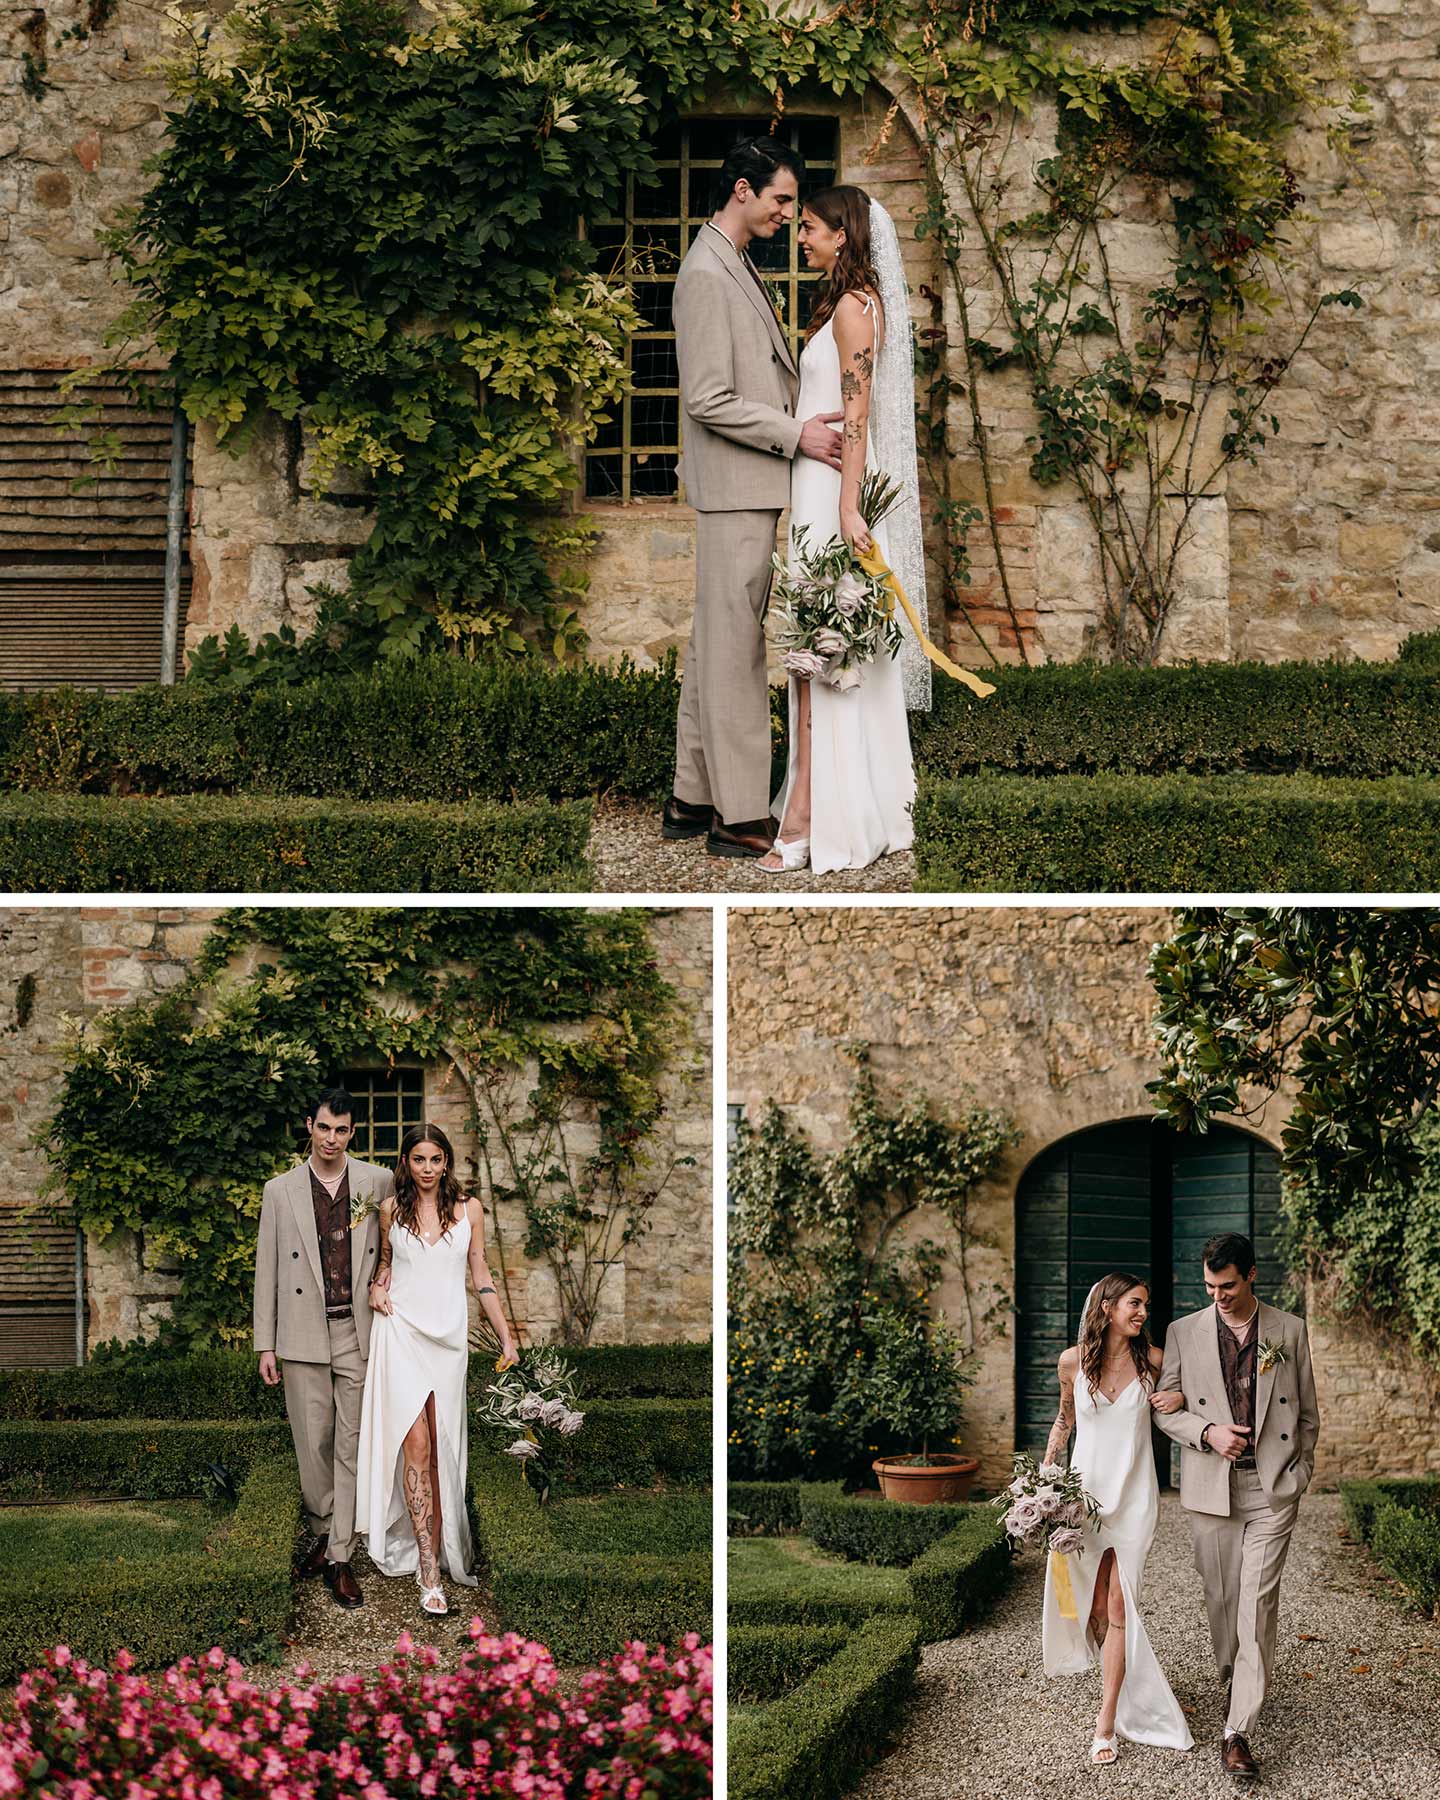 Das Hochzeitspaar befindet sich vor der Location, einem alten Renaissance Gebäude in einem grünen Garten in Italien für ein Fotoshooting.